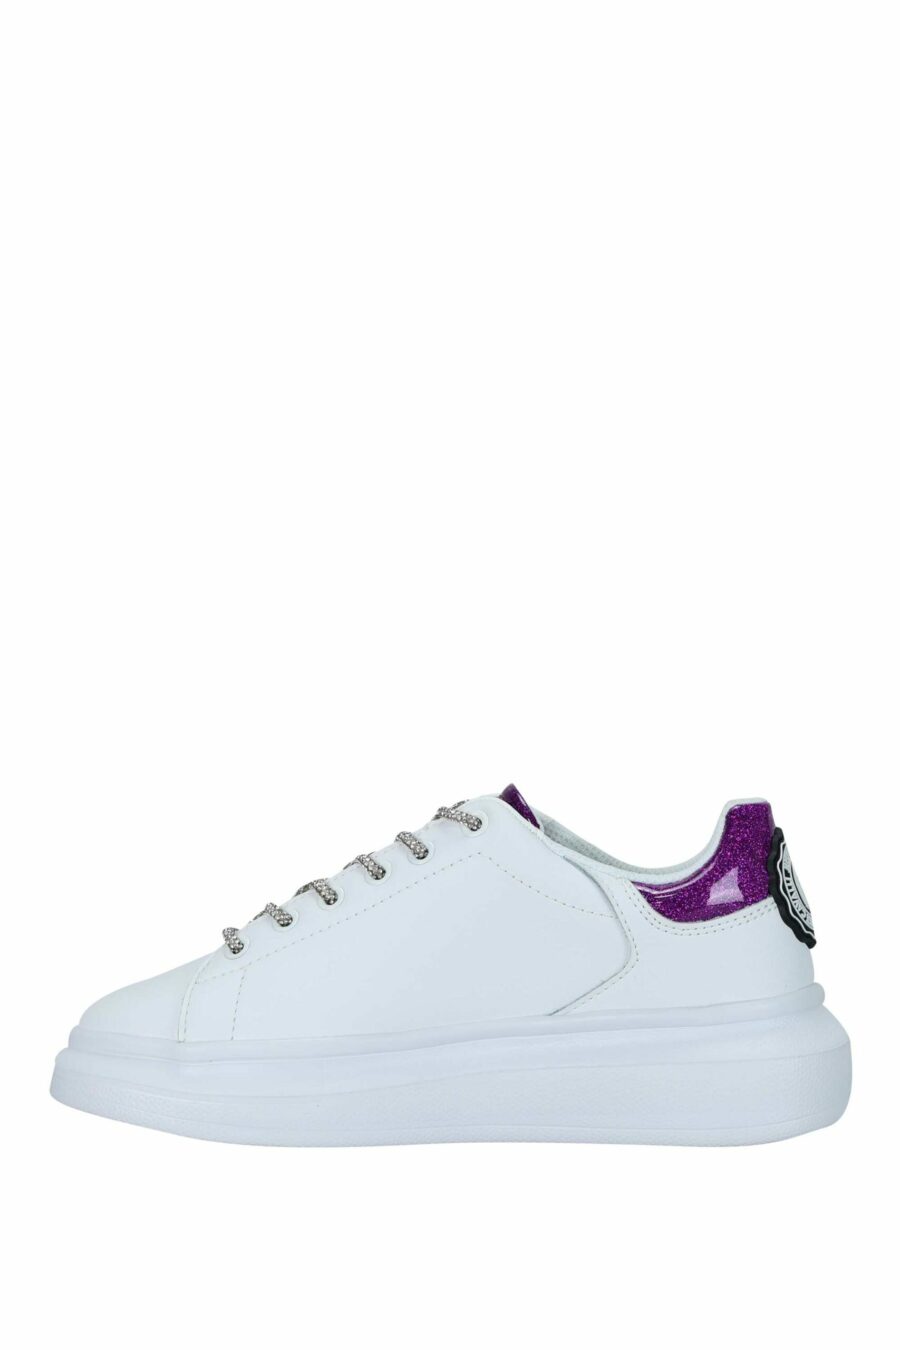 Zapatillas blancas con detalle plateado con purpurina y logo - 8052672731180 2 scaled